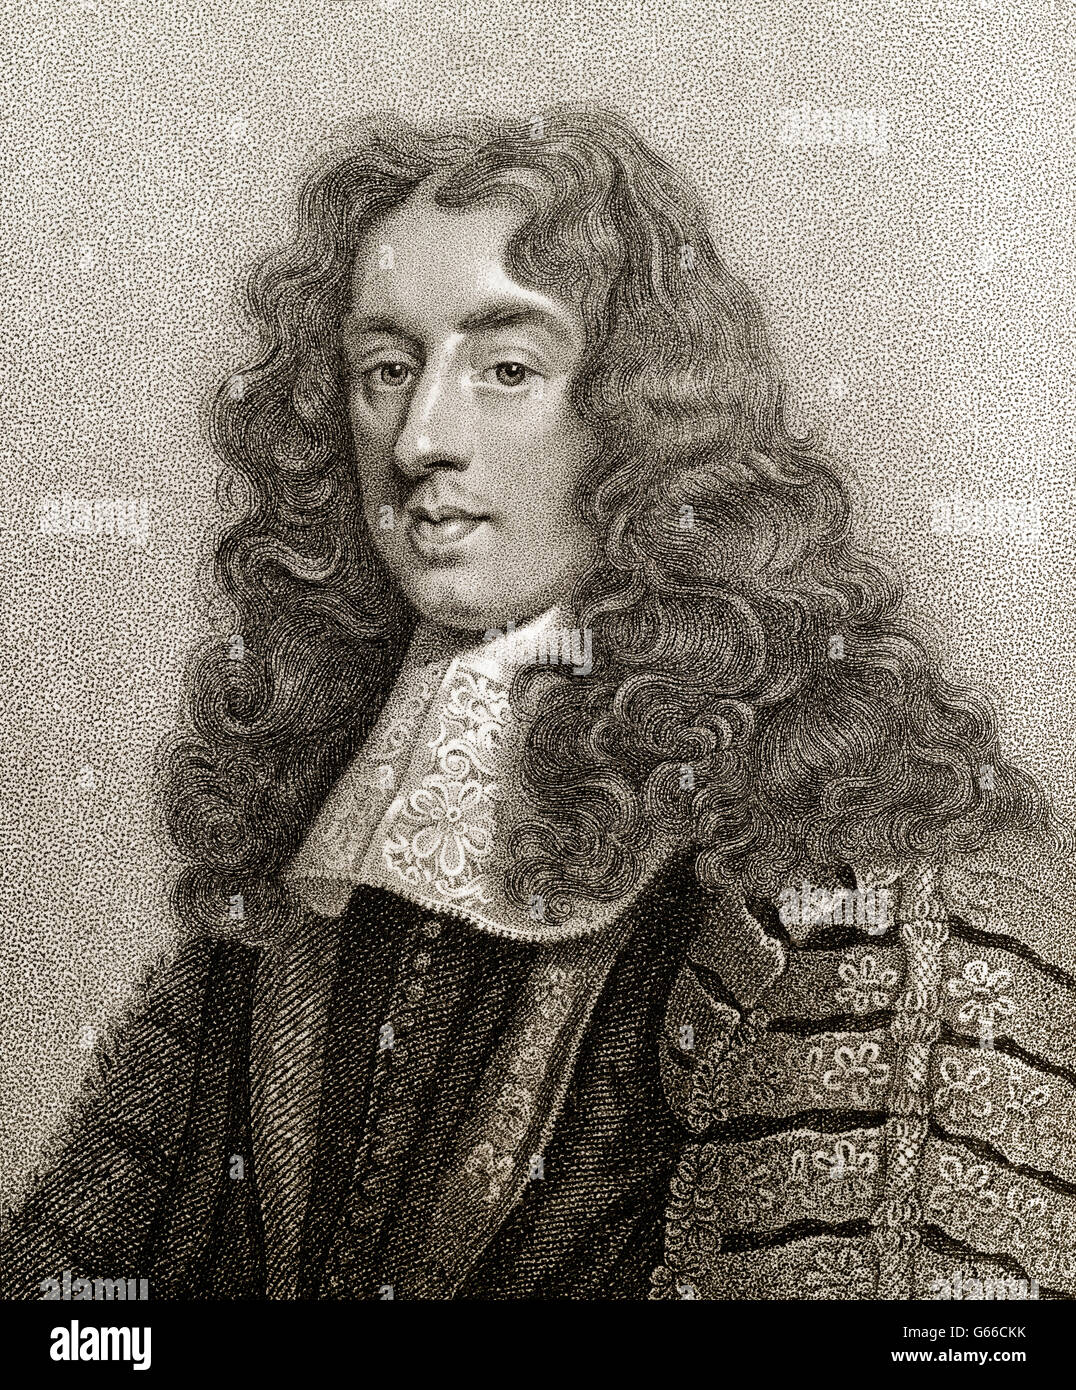 Heneage Finch, 1er comte de Nottingham, PC, 1621-1682, lord chancelier d'Angleterre Banque D'Images